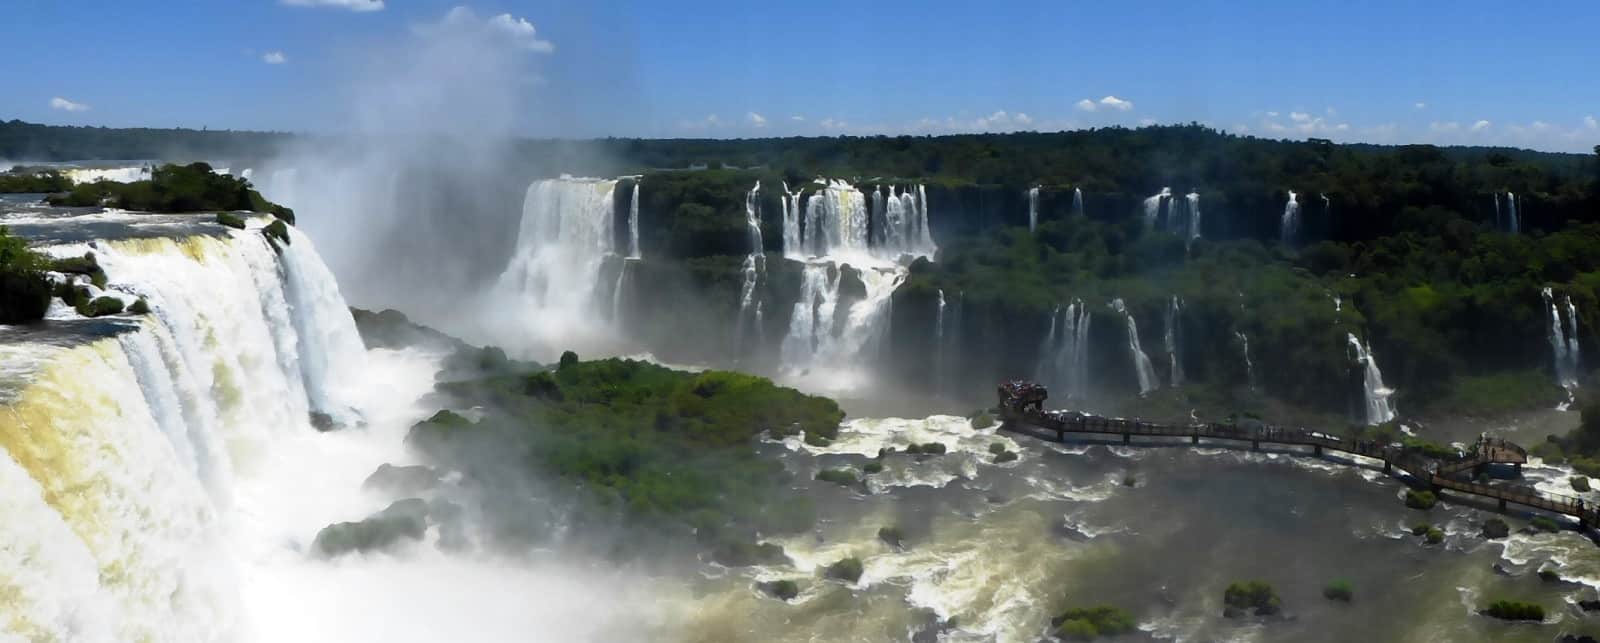 Die Iguazú Falls liegen zwischen Brasilien und Argentinien und sind gigantische Wasserfälle